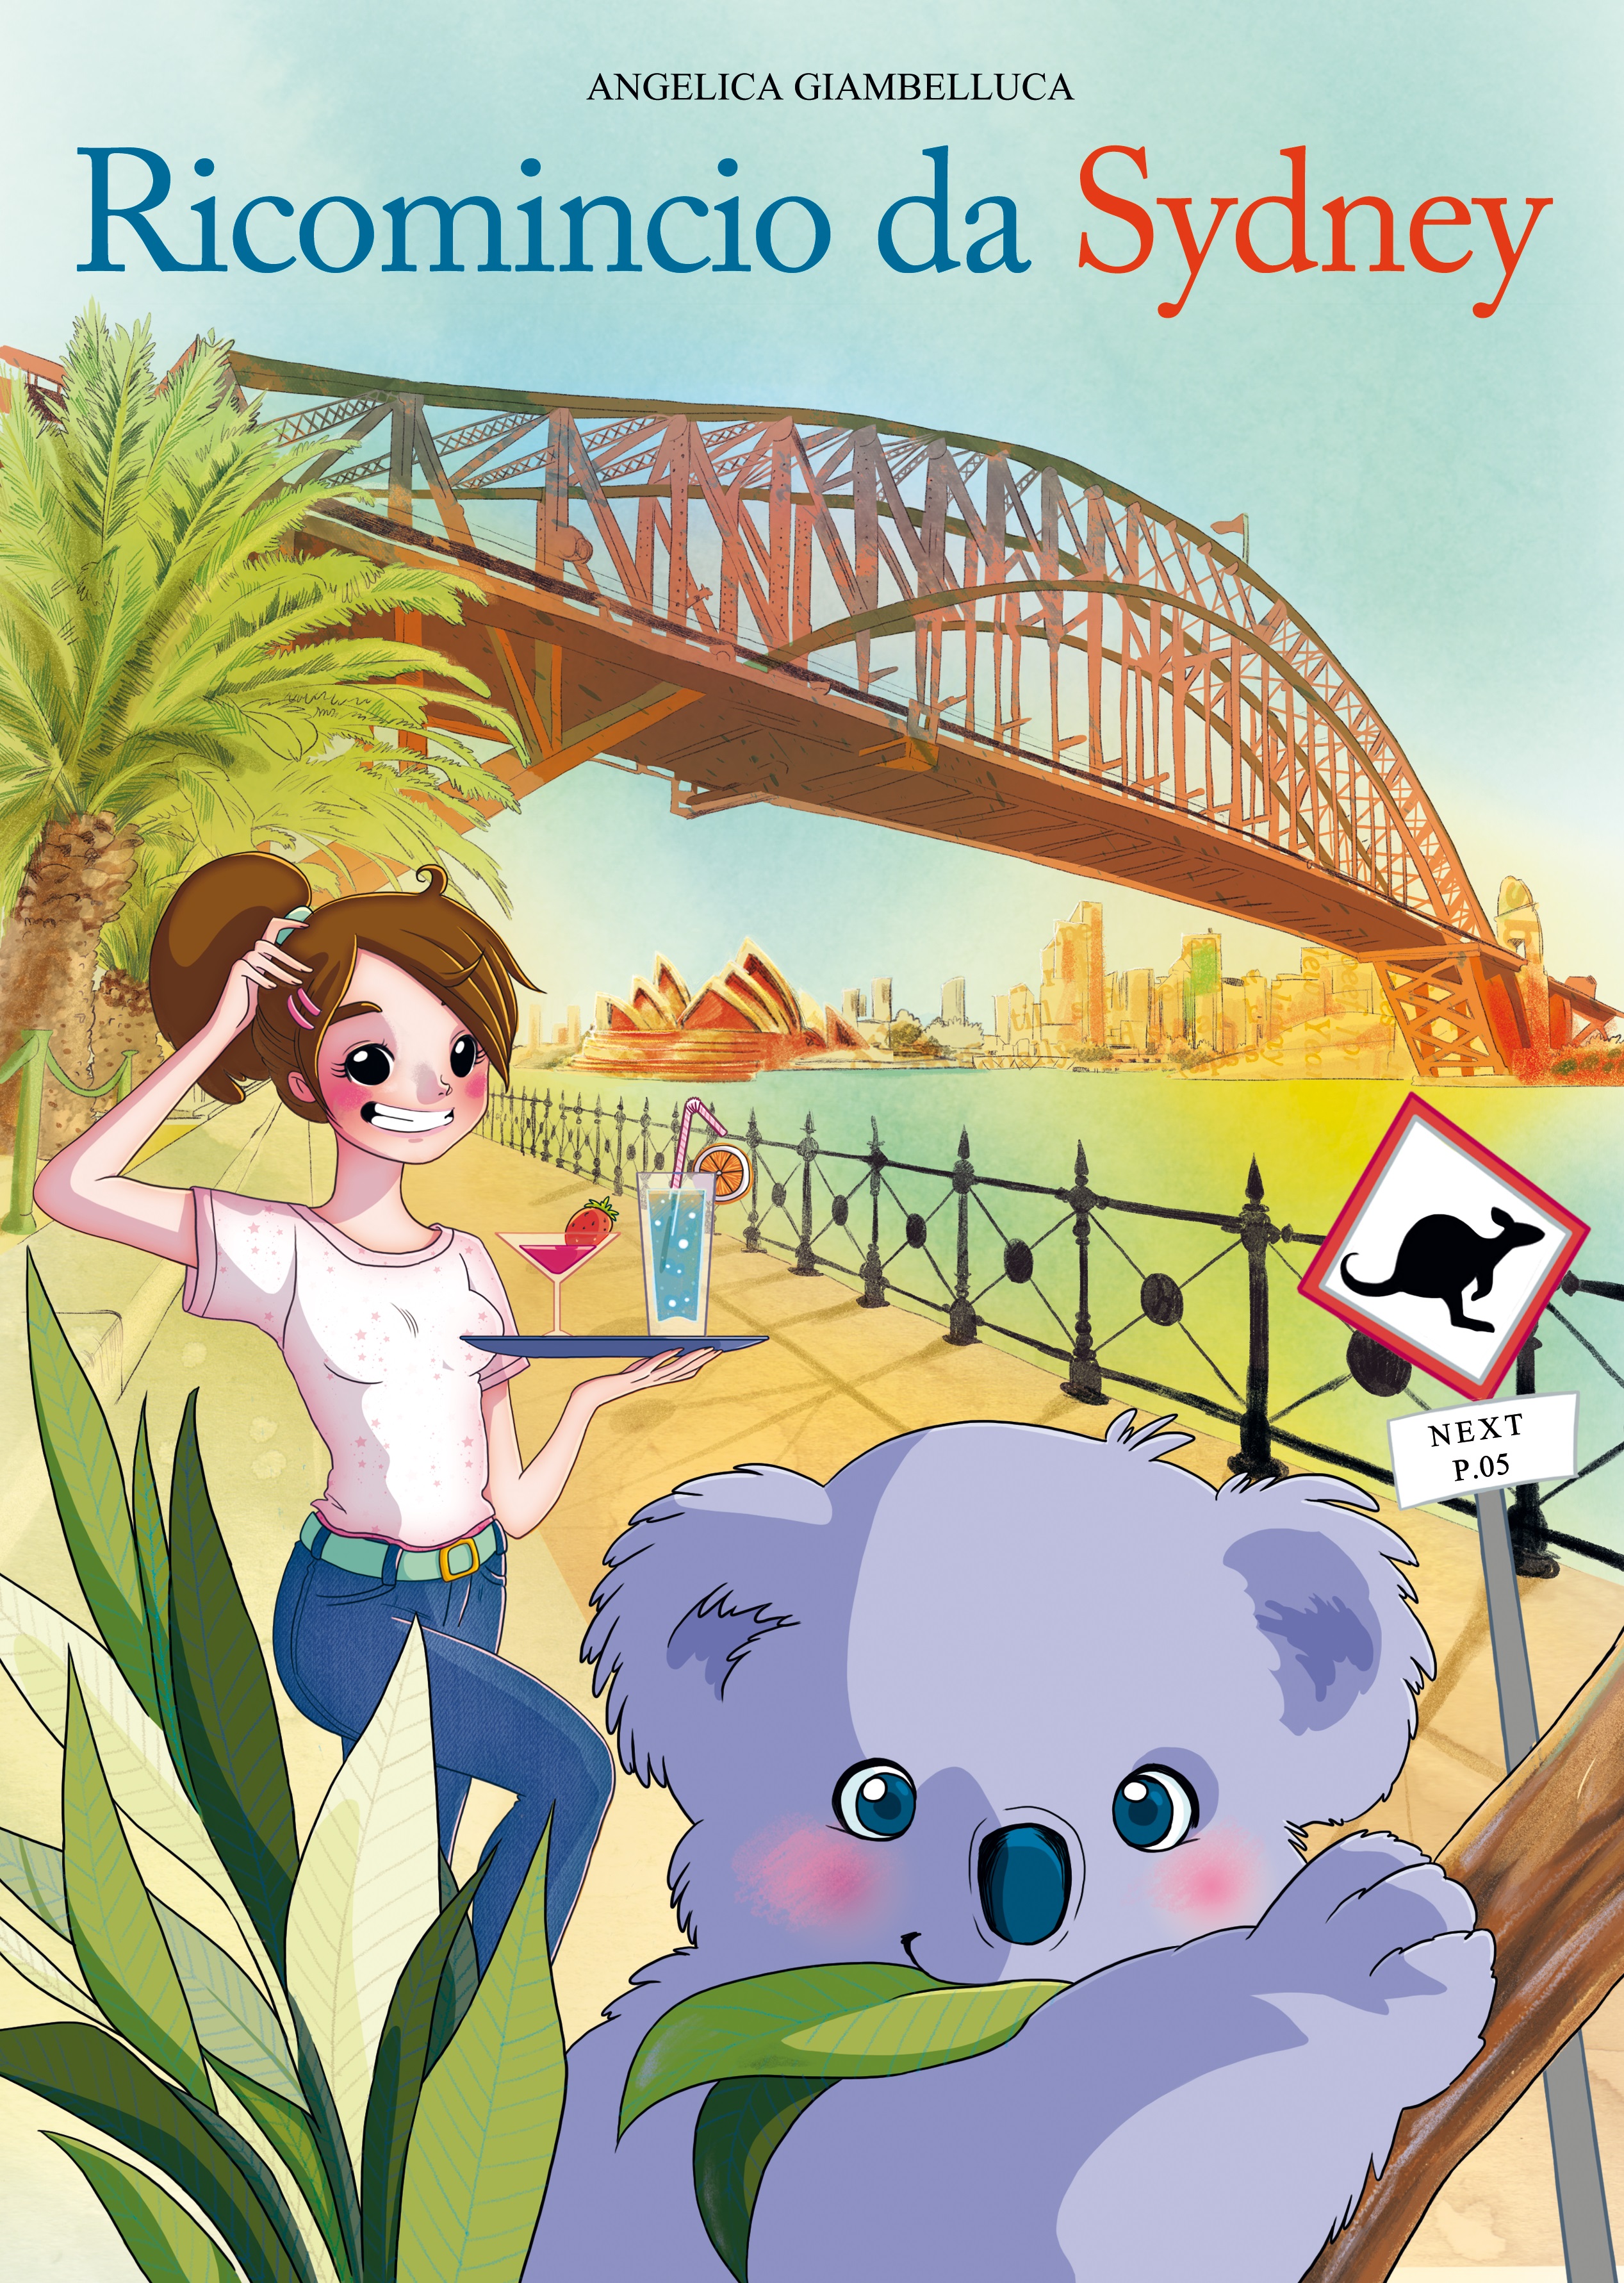 "Ricomincio da Sydney" il racconto della mia avventura in Australia!